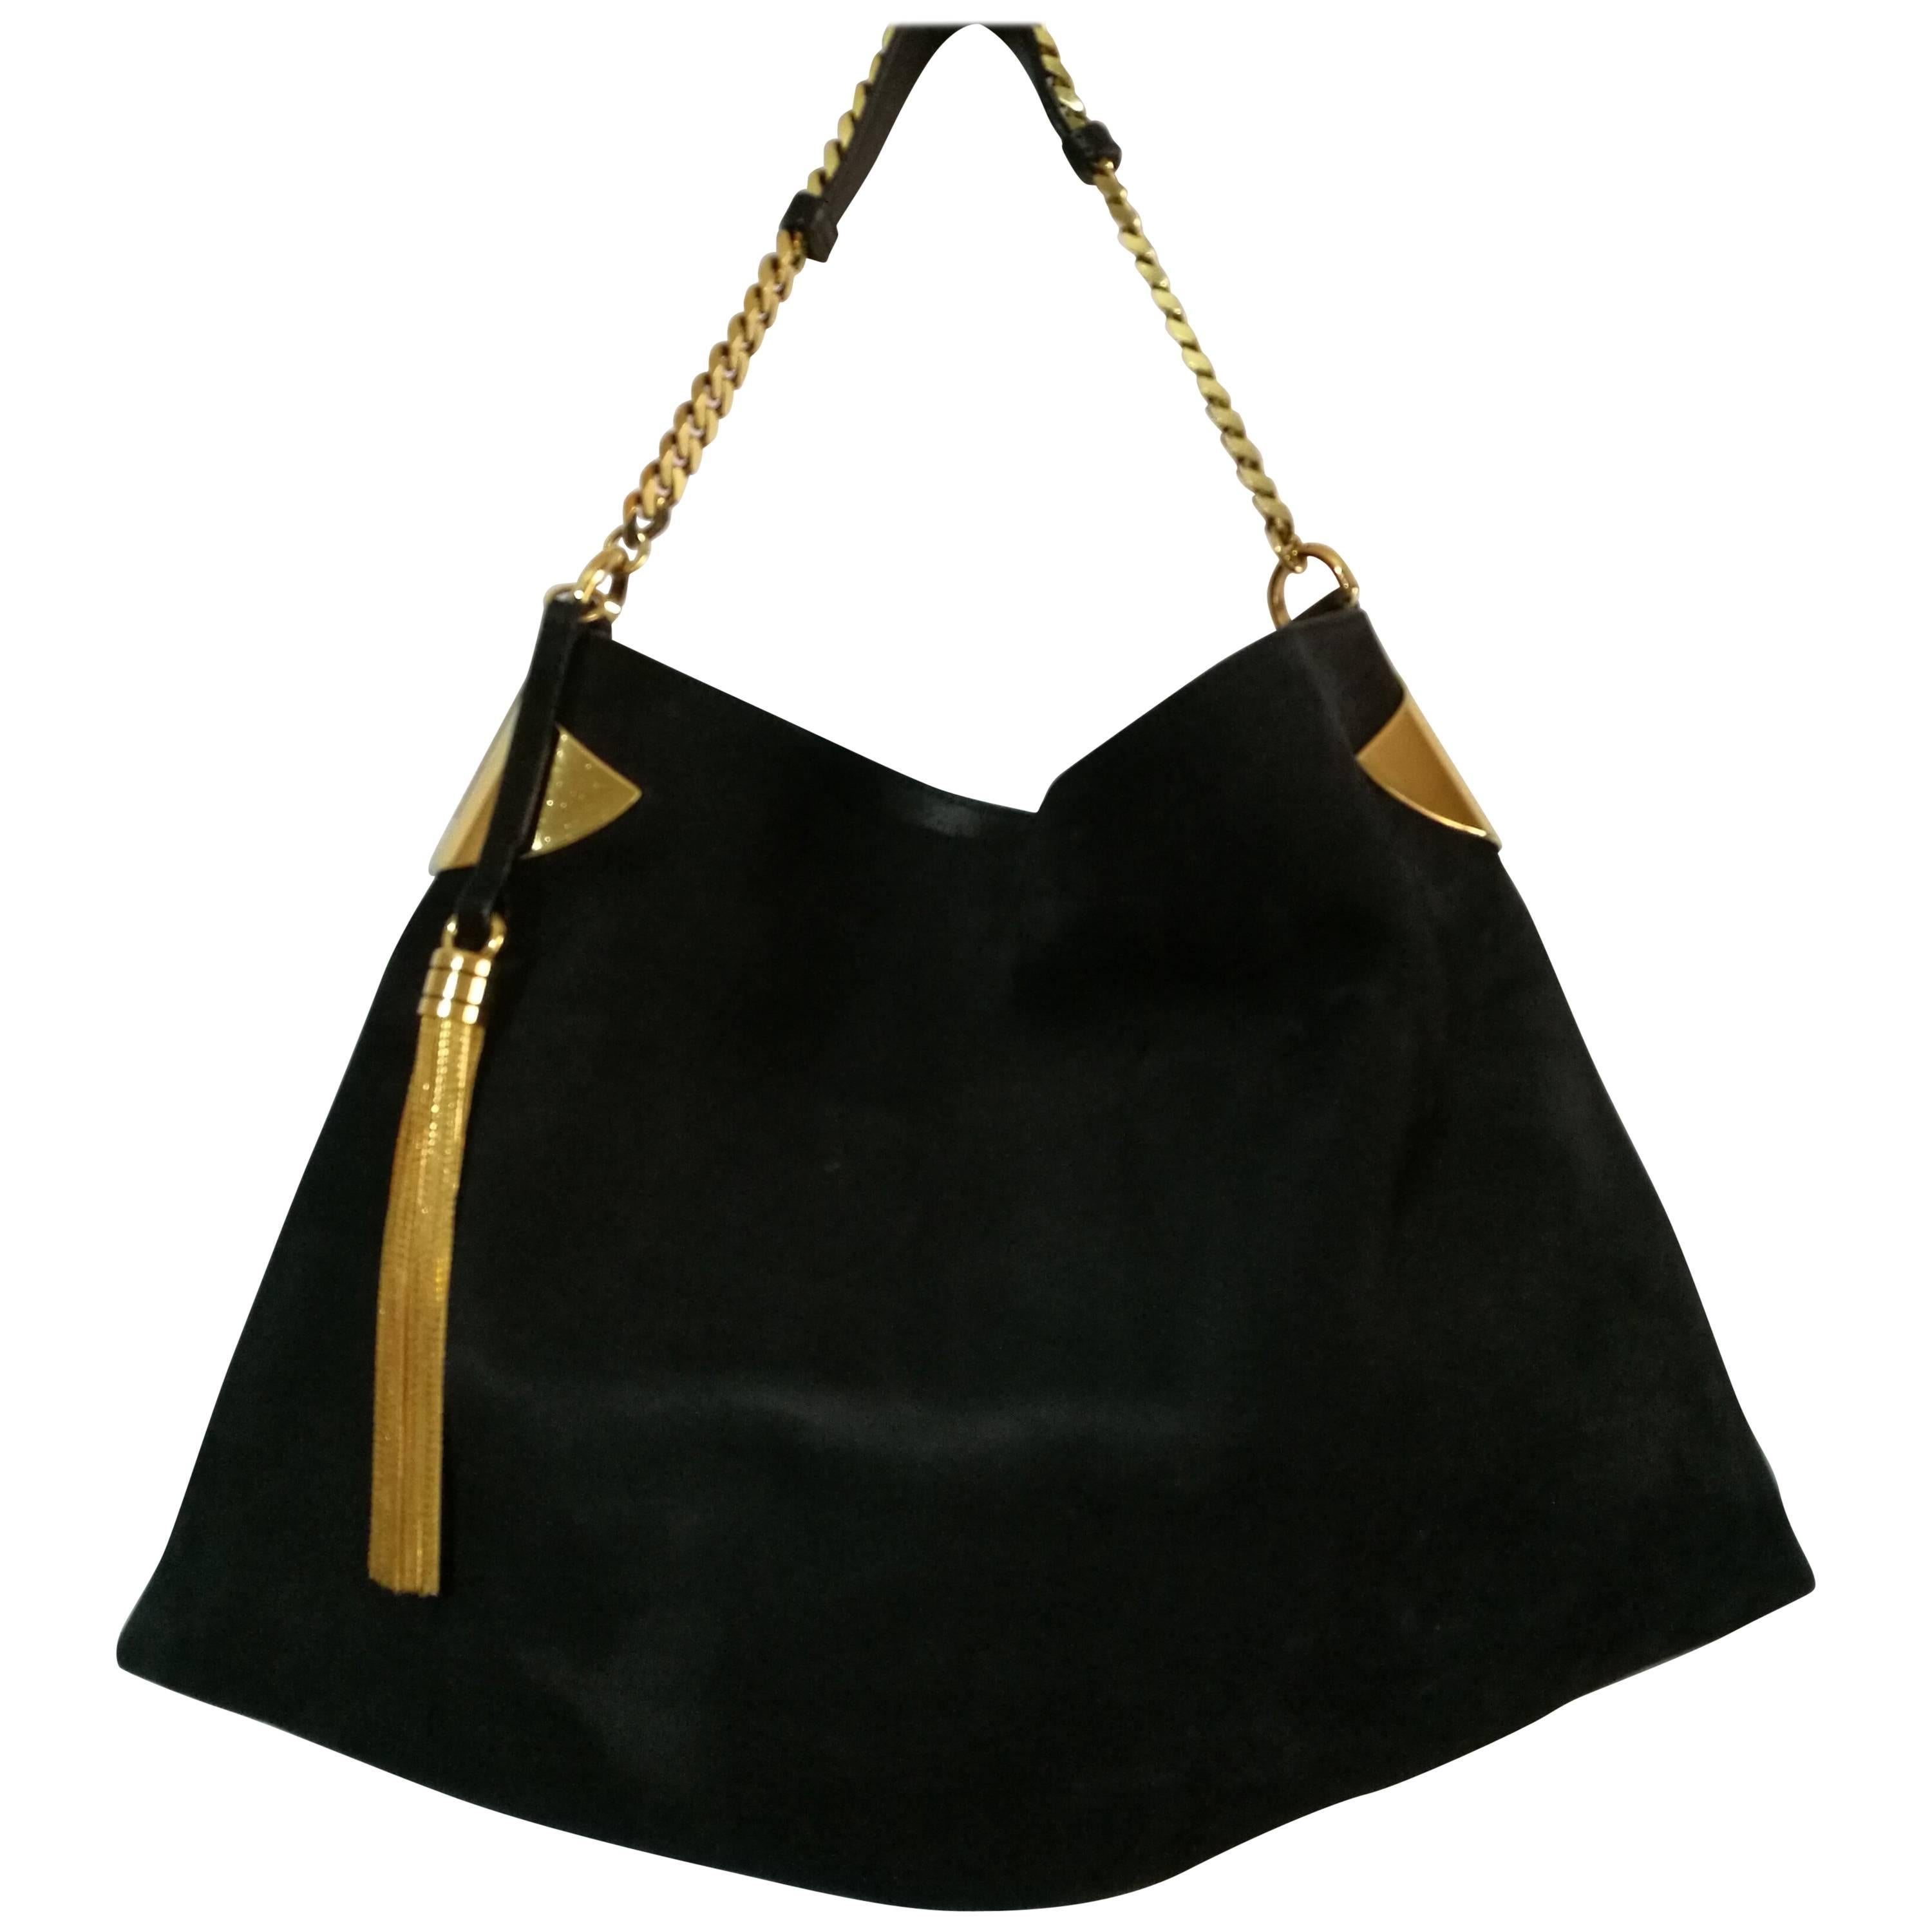 1970s Gucci Black Gold Hardware Shoulder Bag